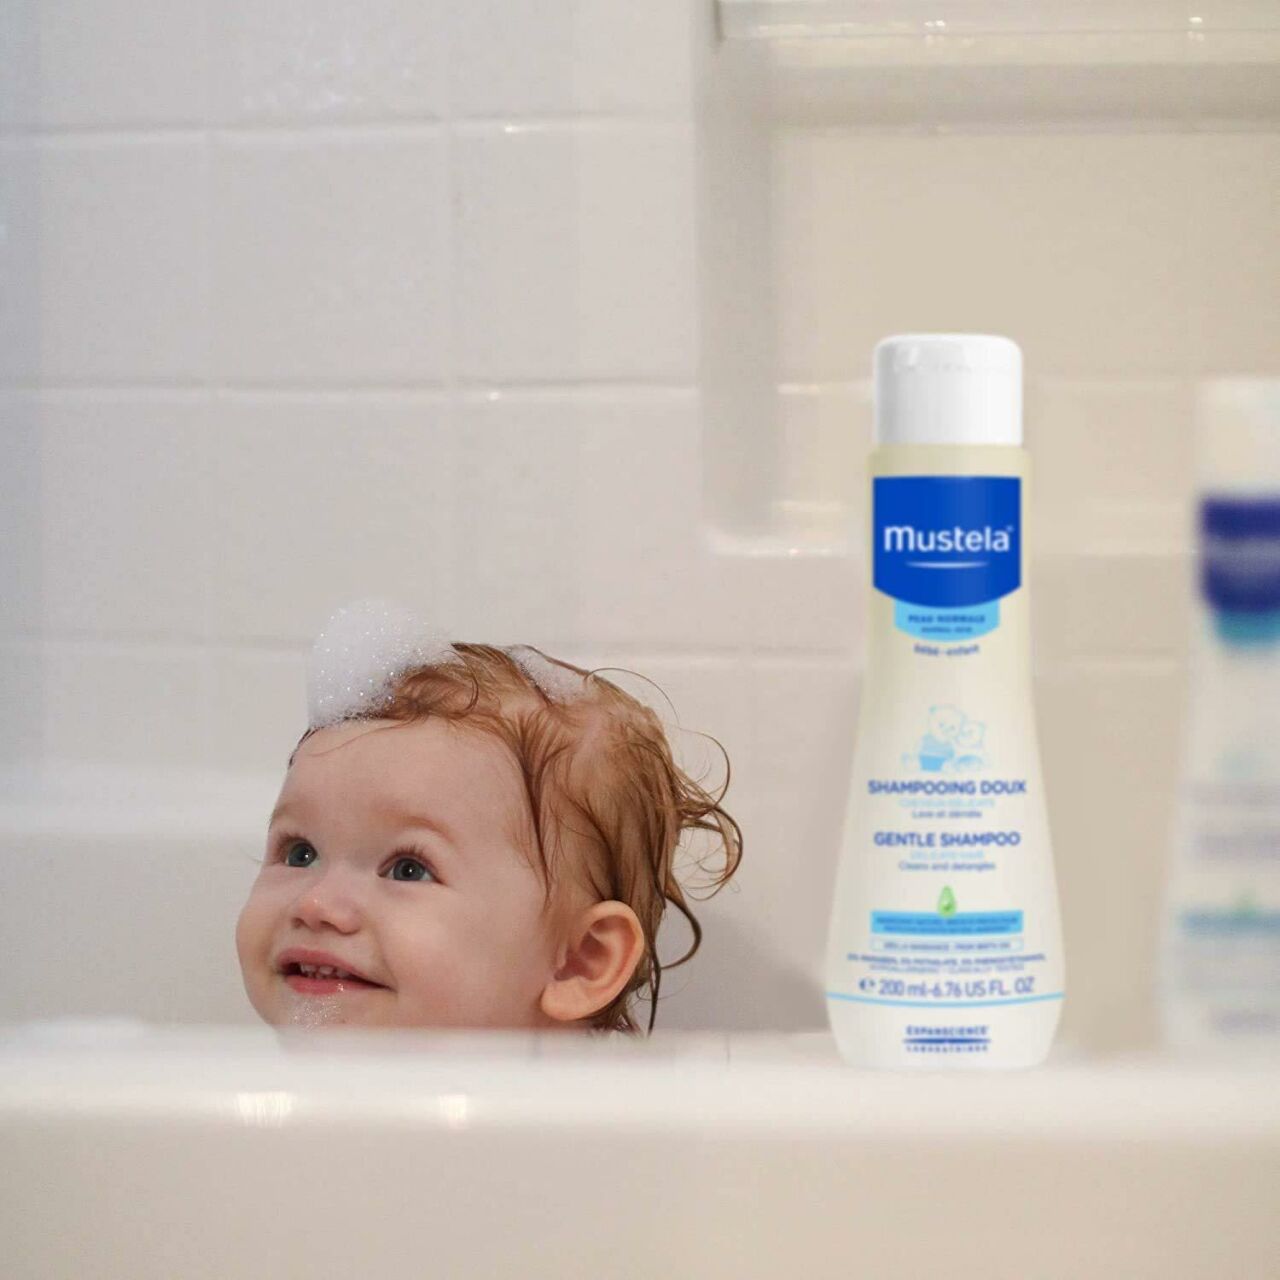 Mustela Bebek Şampuanı : BebeklerinizinCiltleri İçin Mükemmel Bakım!